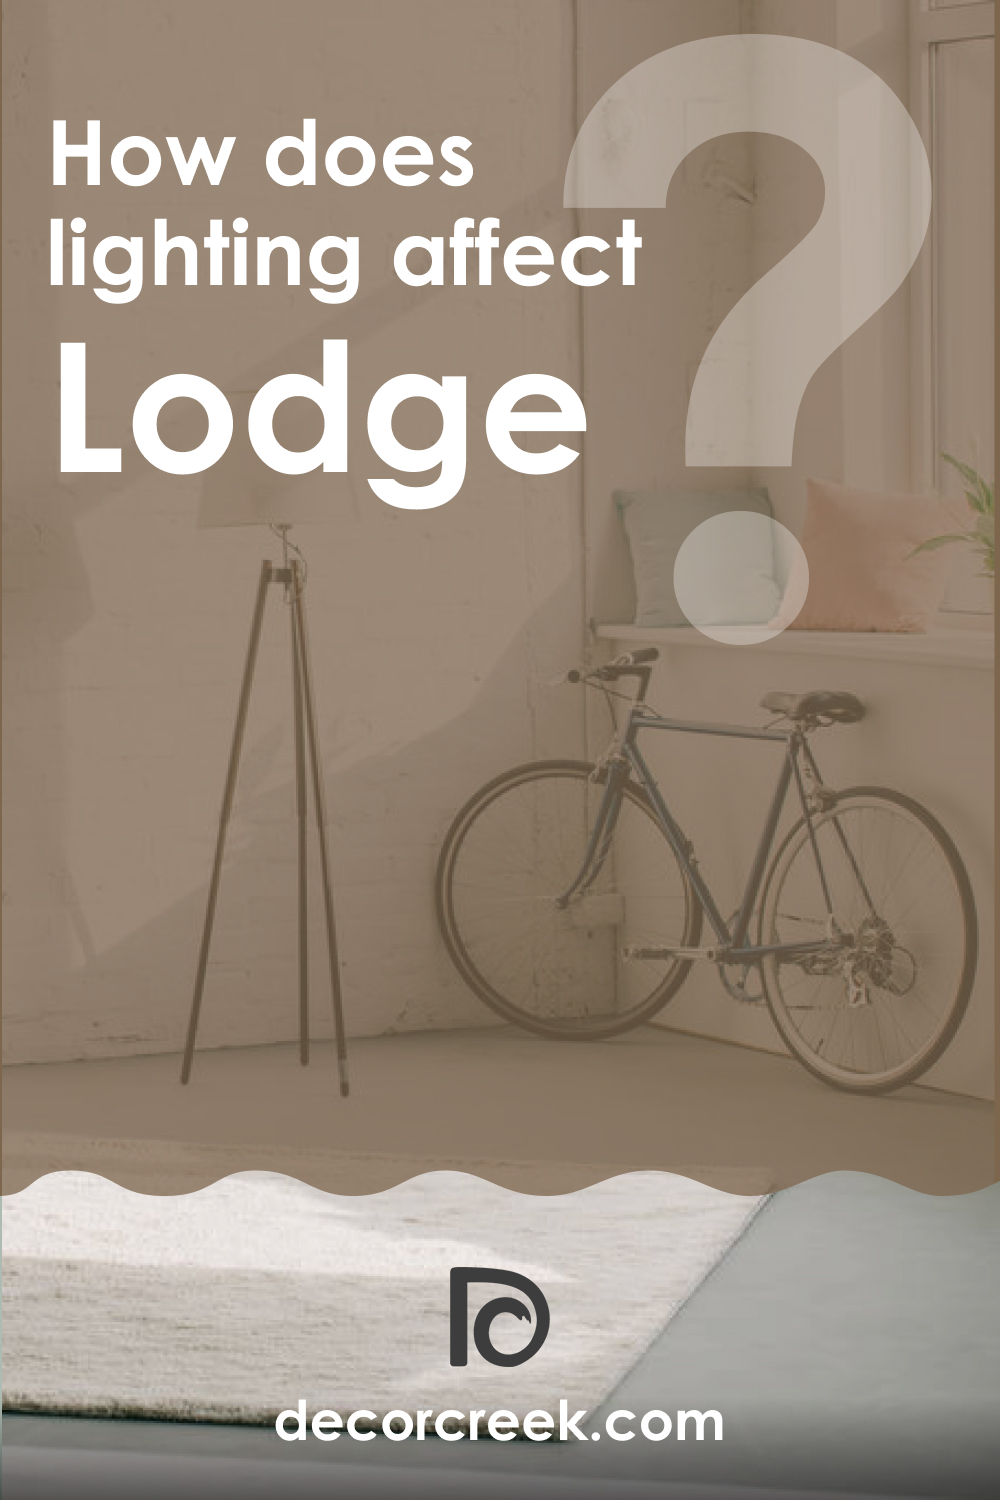 How Does Lighting Affect Lodge AF-115?